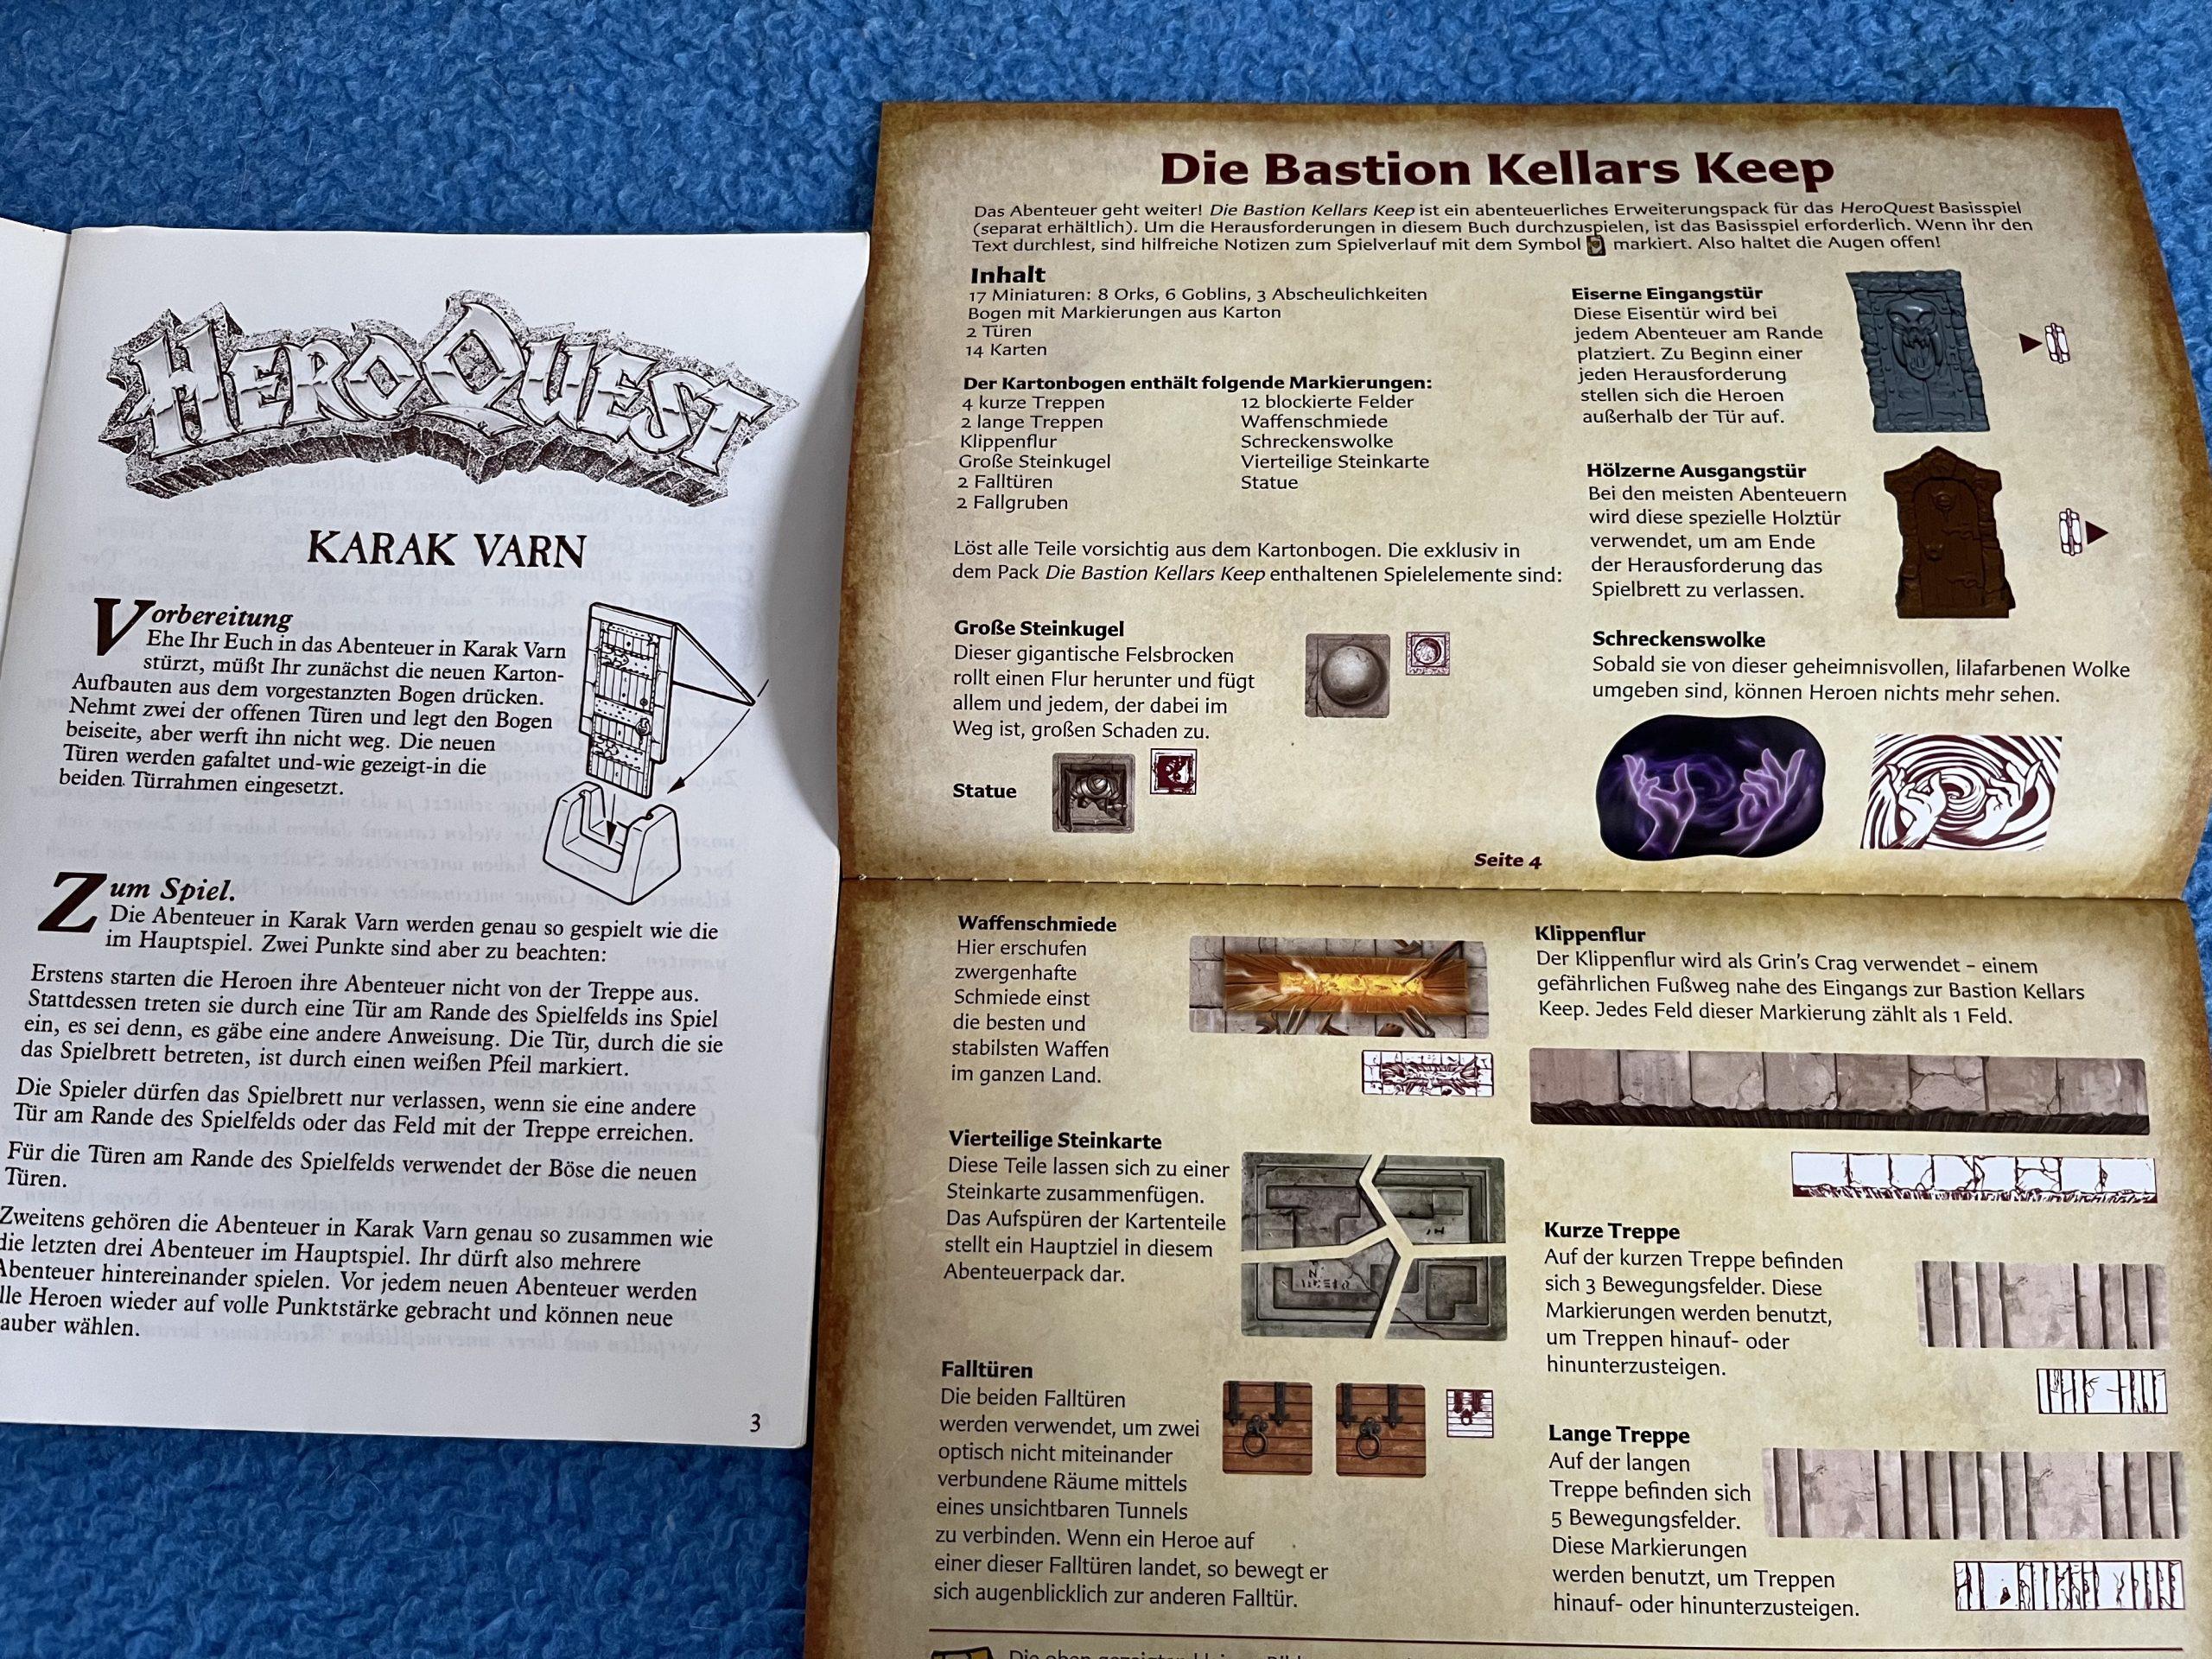 HeroQuest - Die Bastion Kellars Keep - Vergleich